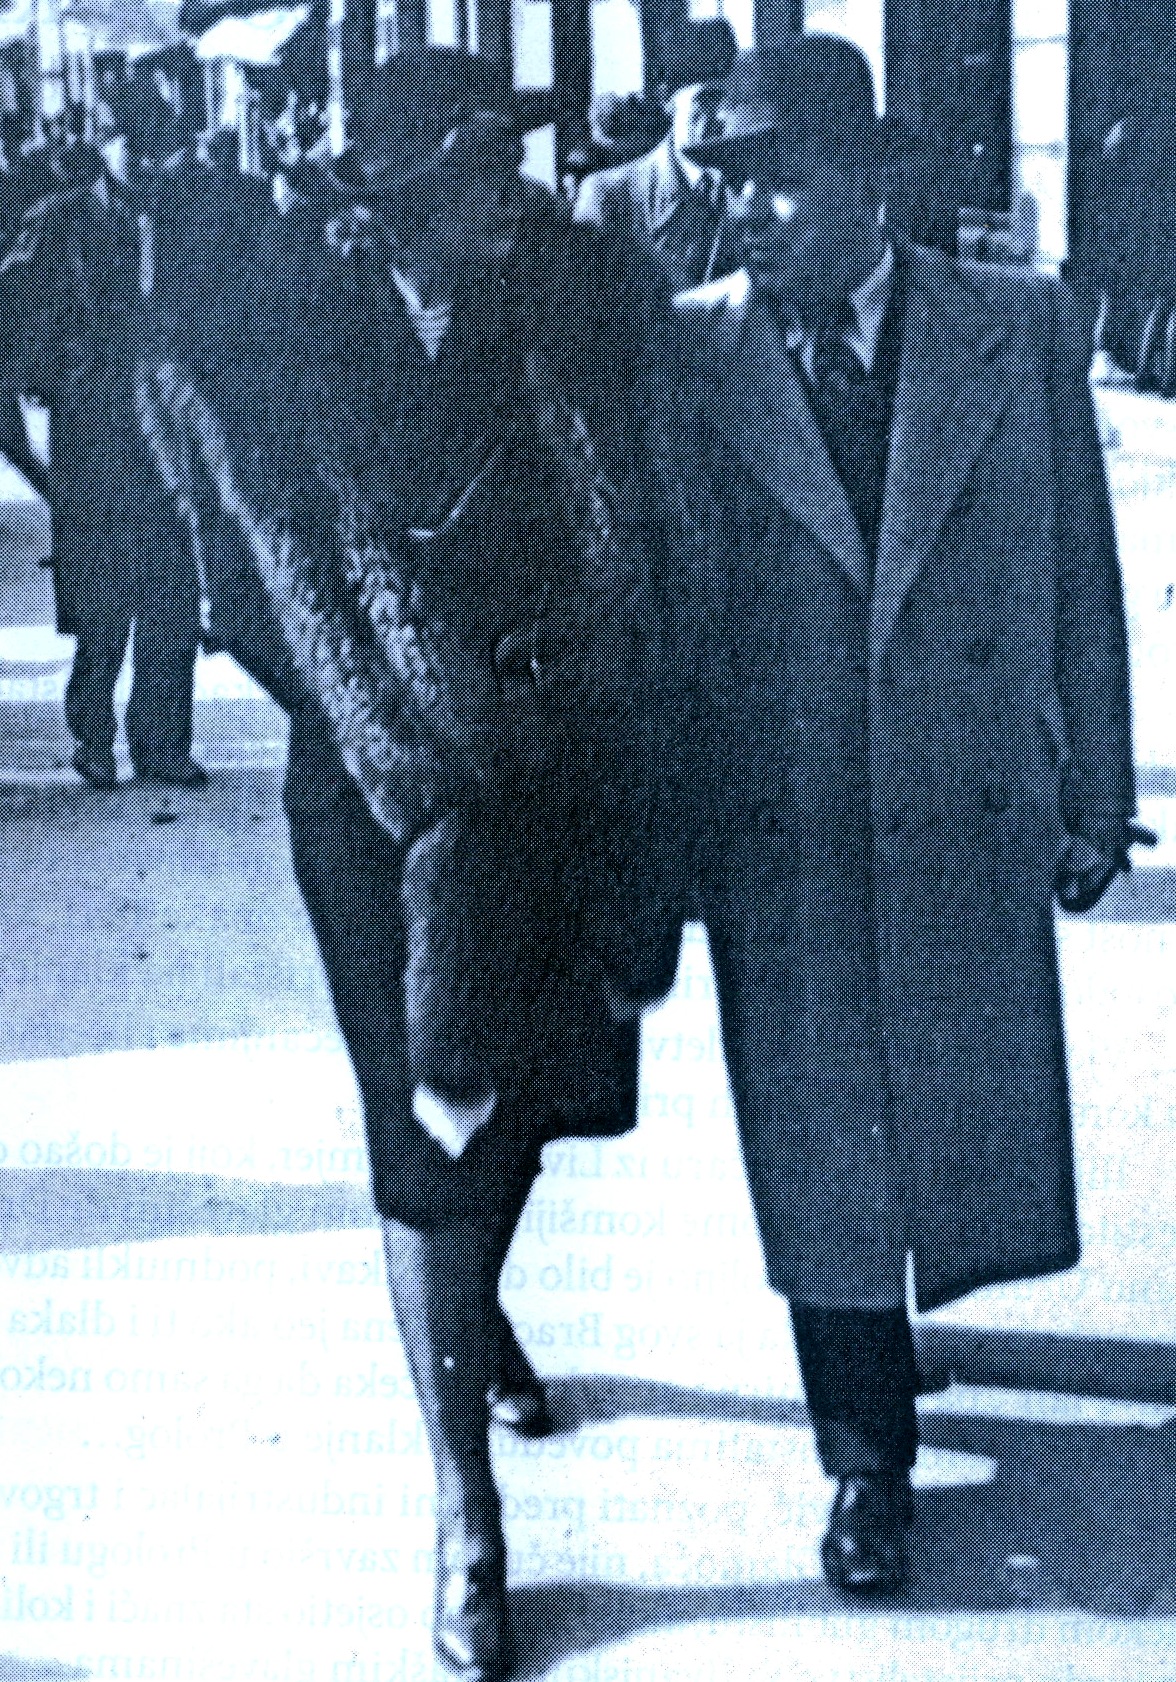 ВЕСЕЛИН НАЕРЛОВИЋ са супругом ПАУЛИНОМ уочи Другог свјетског рата у Сарајеву